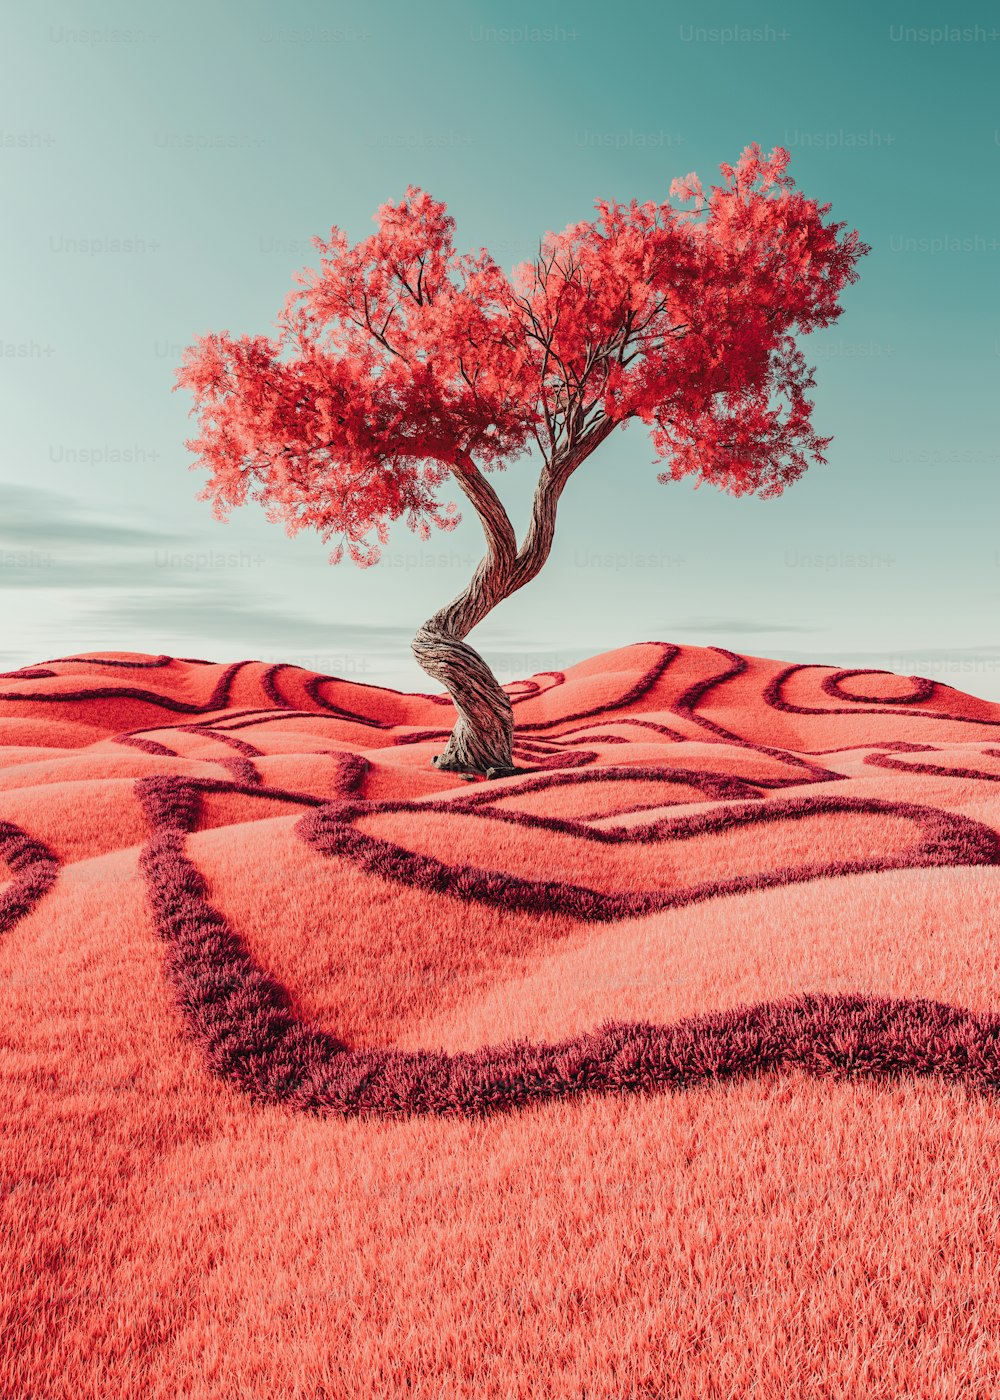 un árbol solitario en medio de un campo rojo